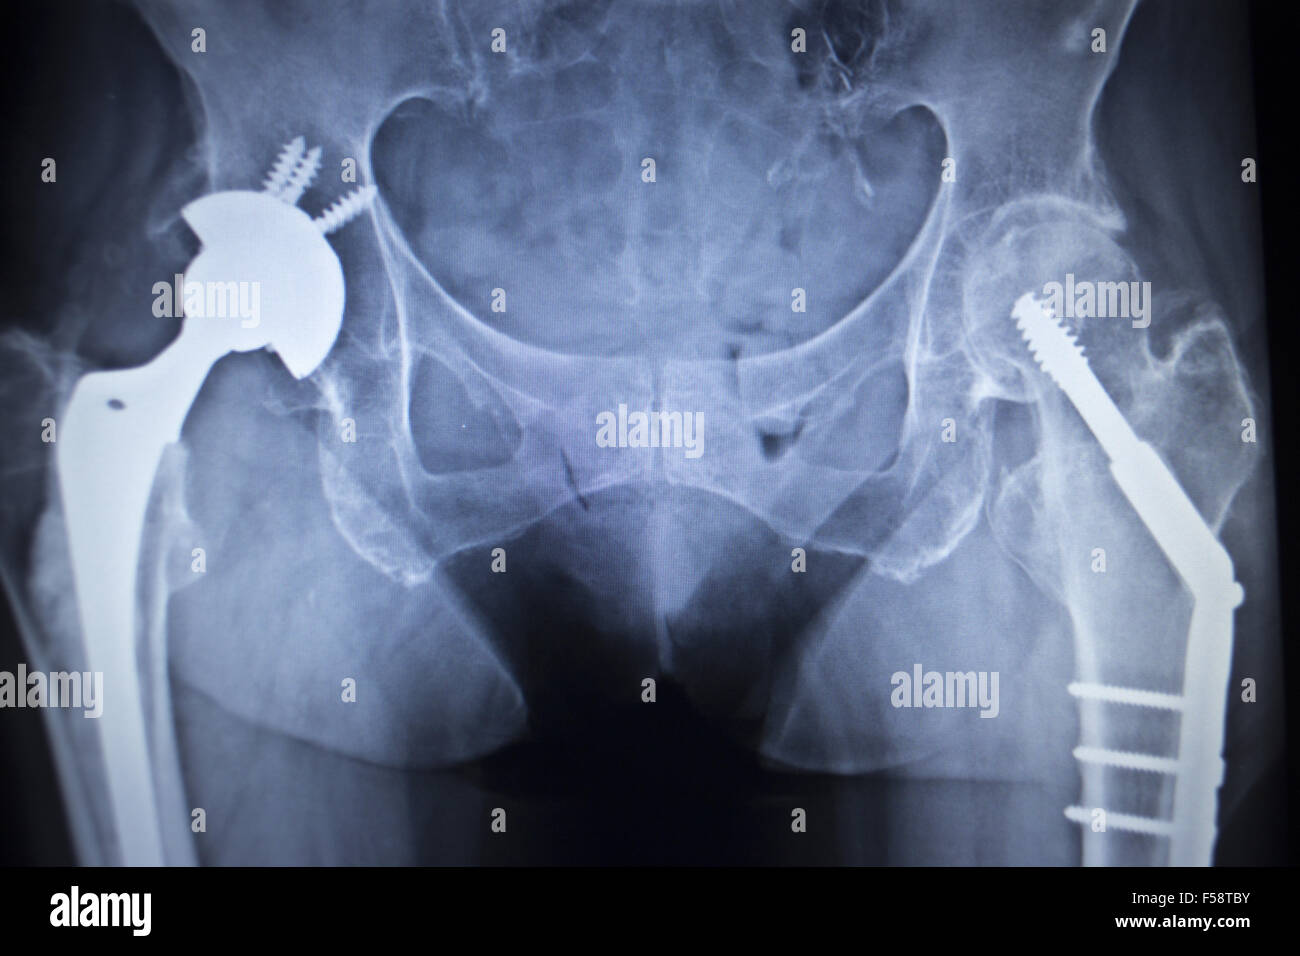 Orthopädie Skelett vom Hüftgelenk / Leiste mit Sehnen Rückansicht von  Hinten Photos